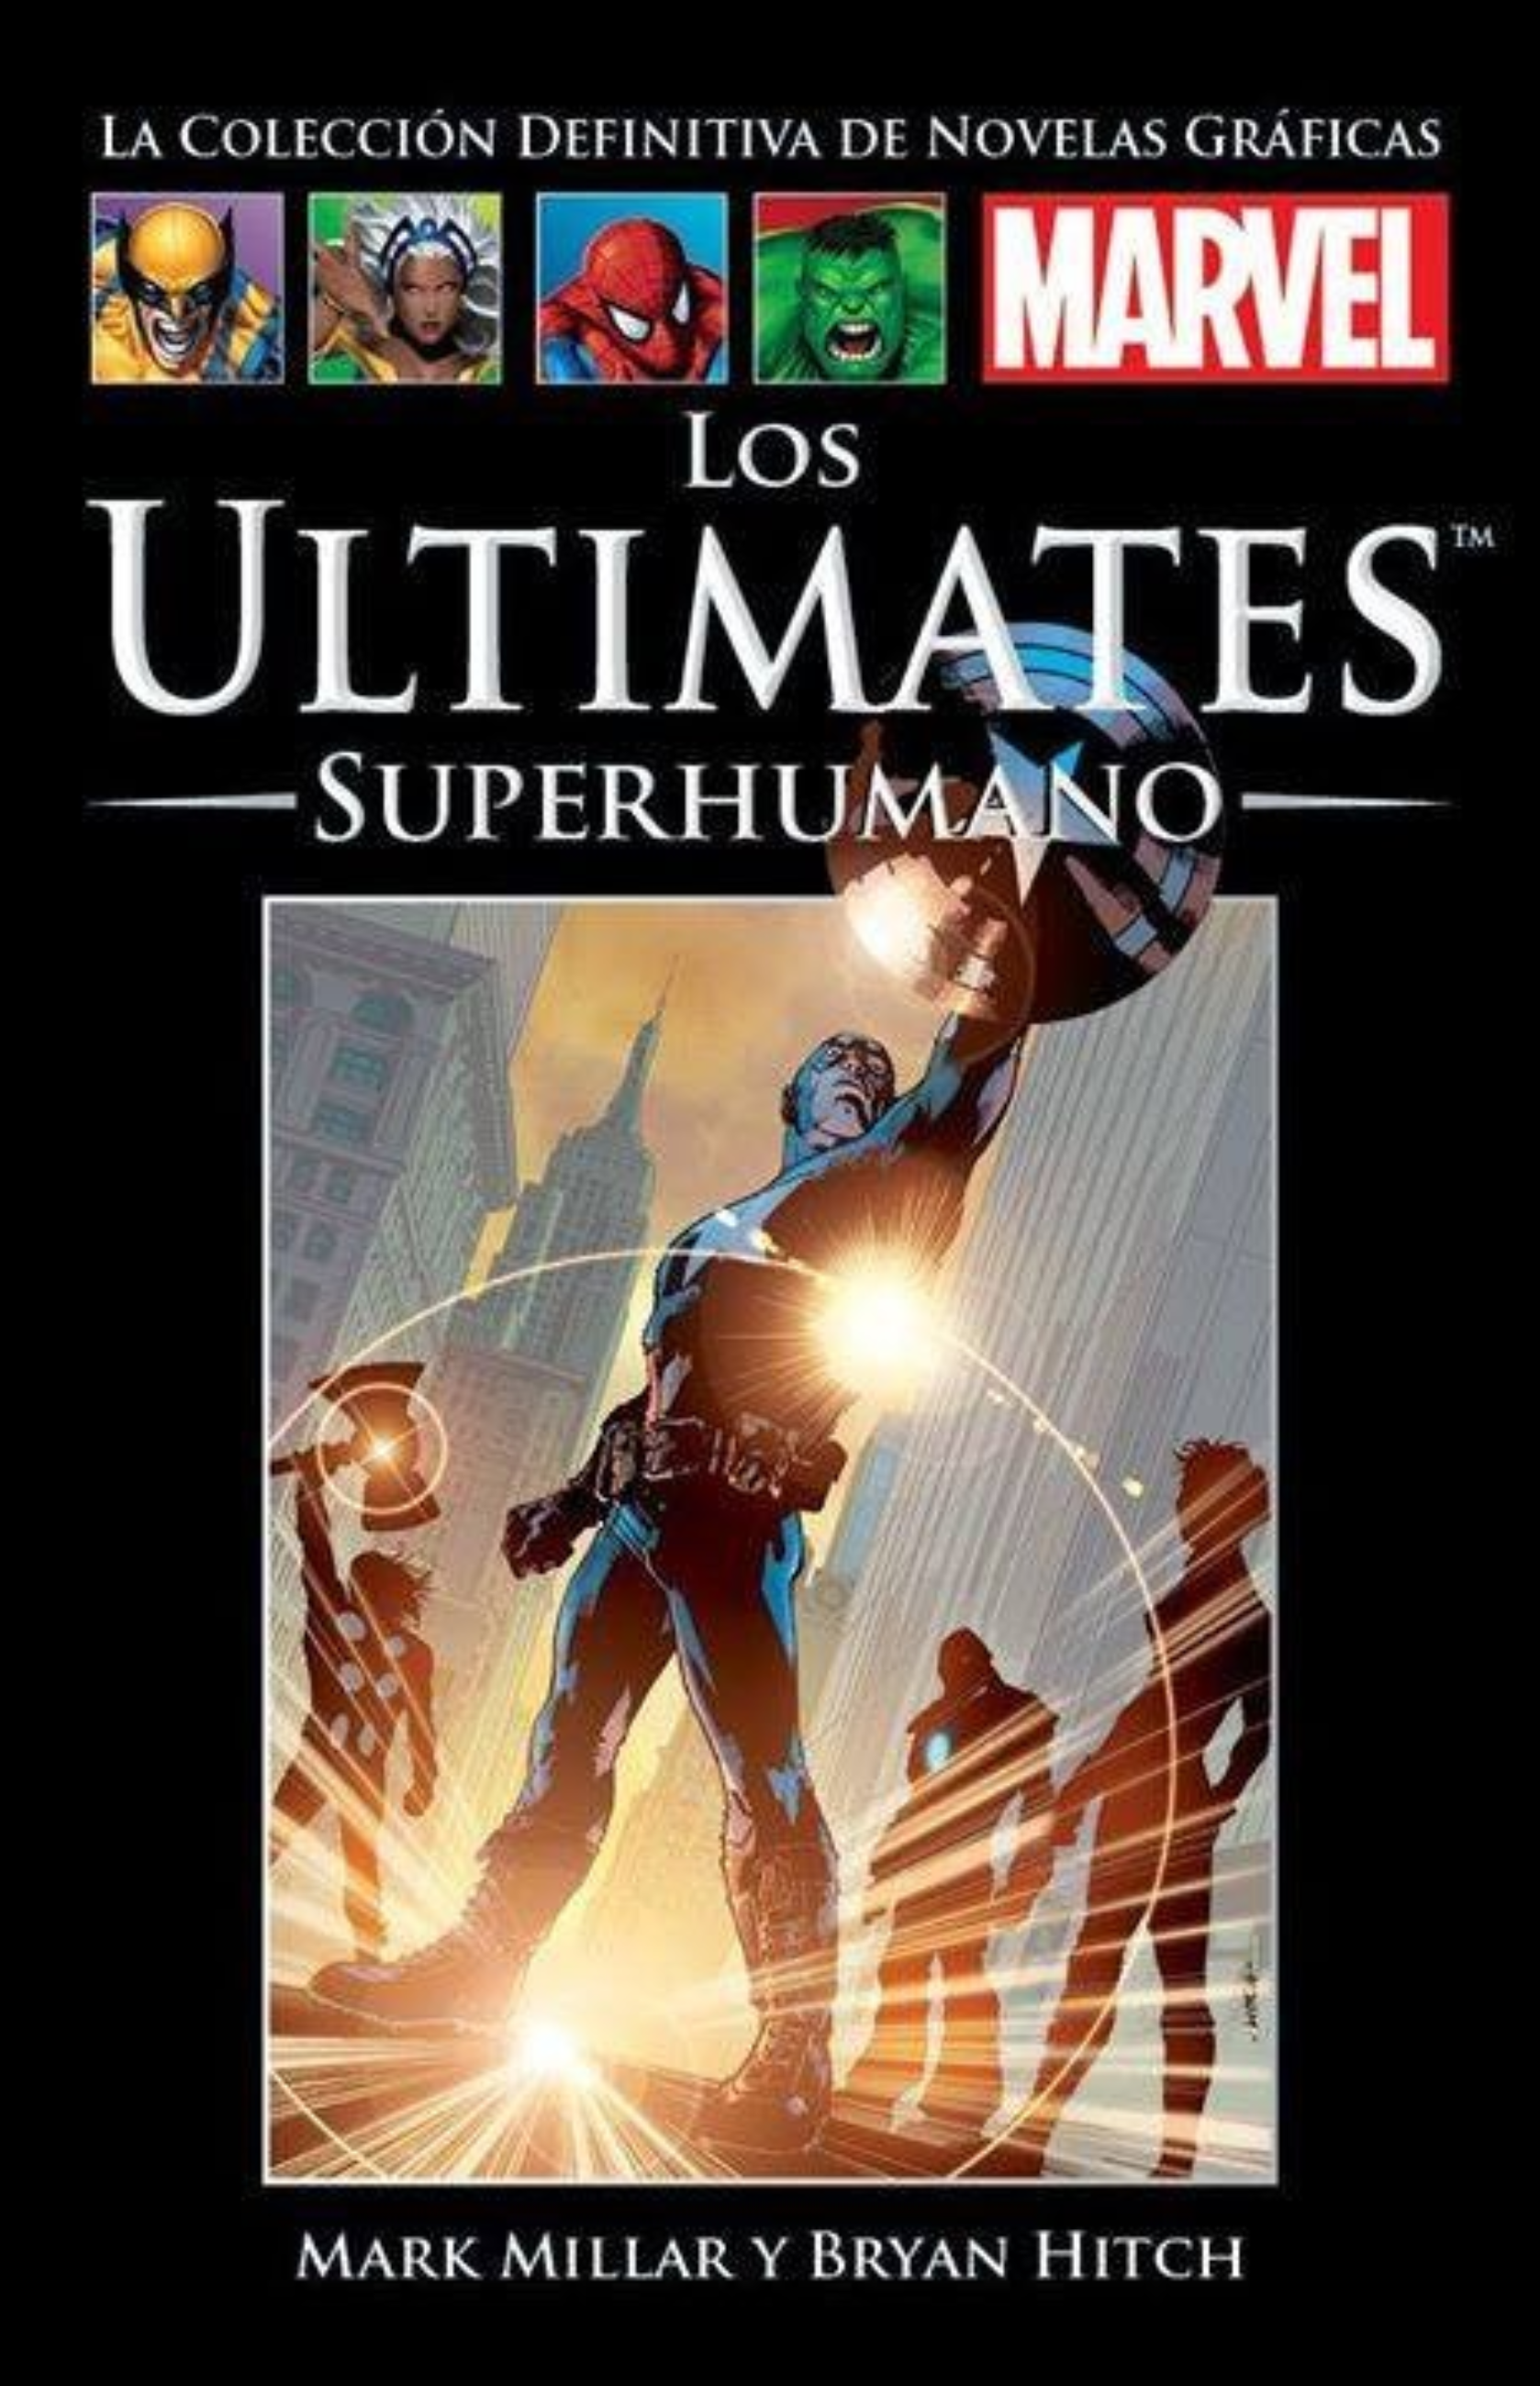 Los ultimates. Superhumano